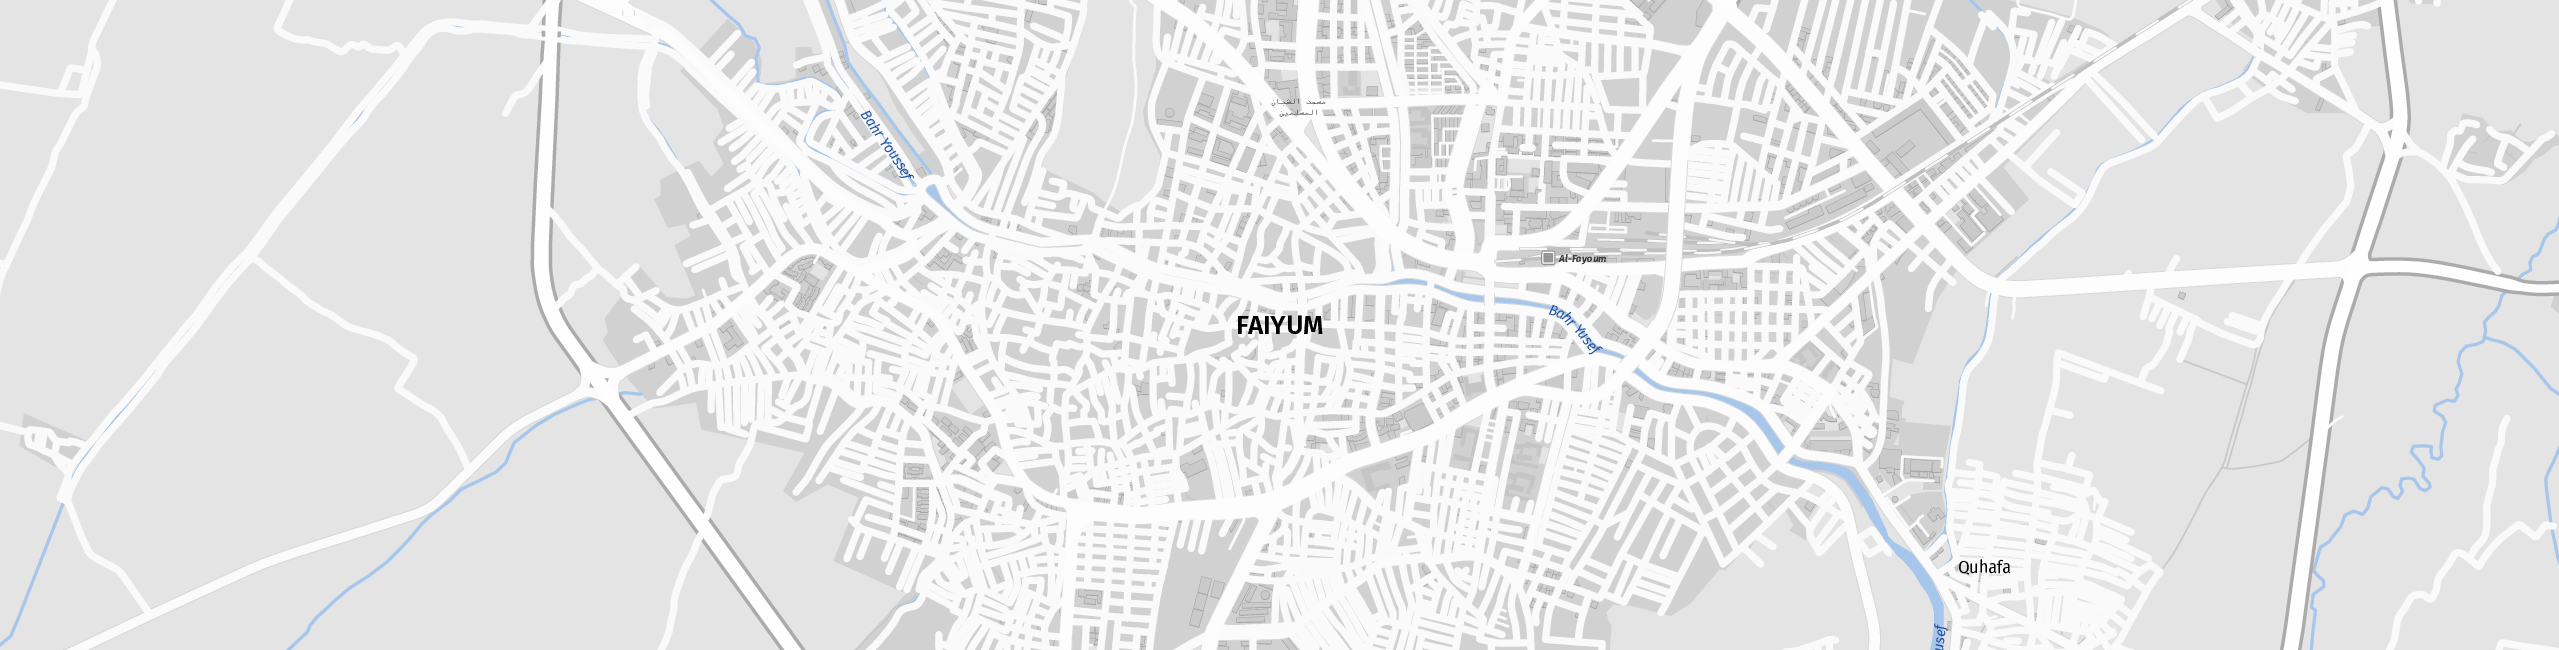 Stadtplan Faiyum zum Downloaden.